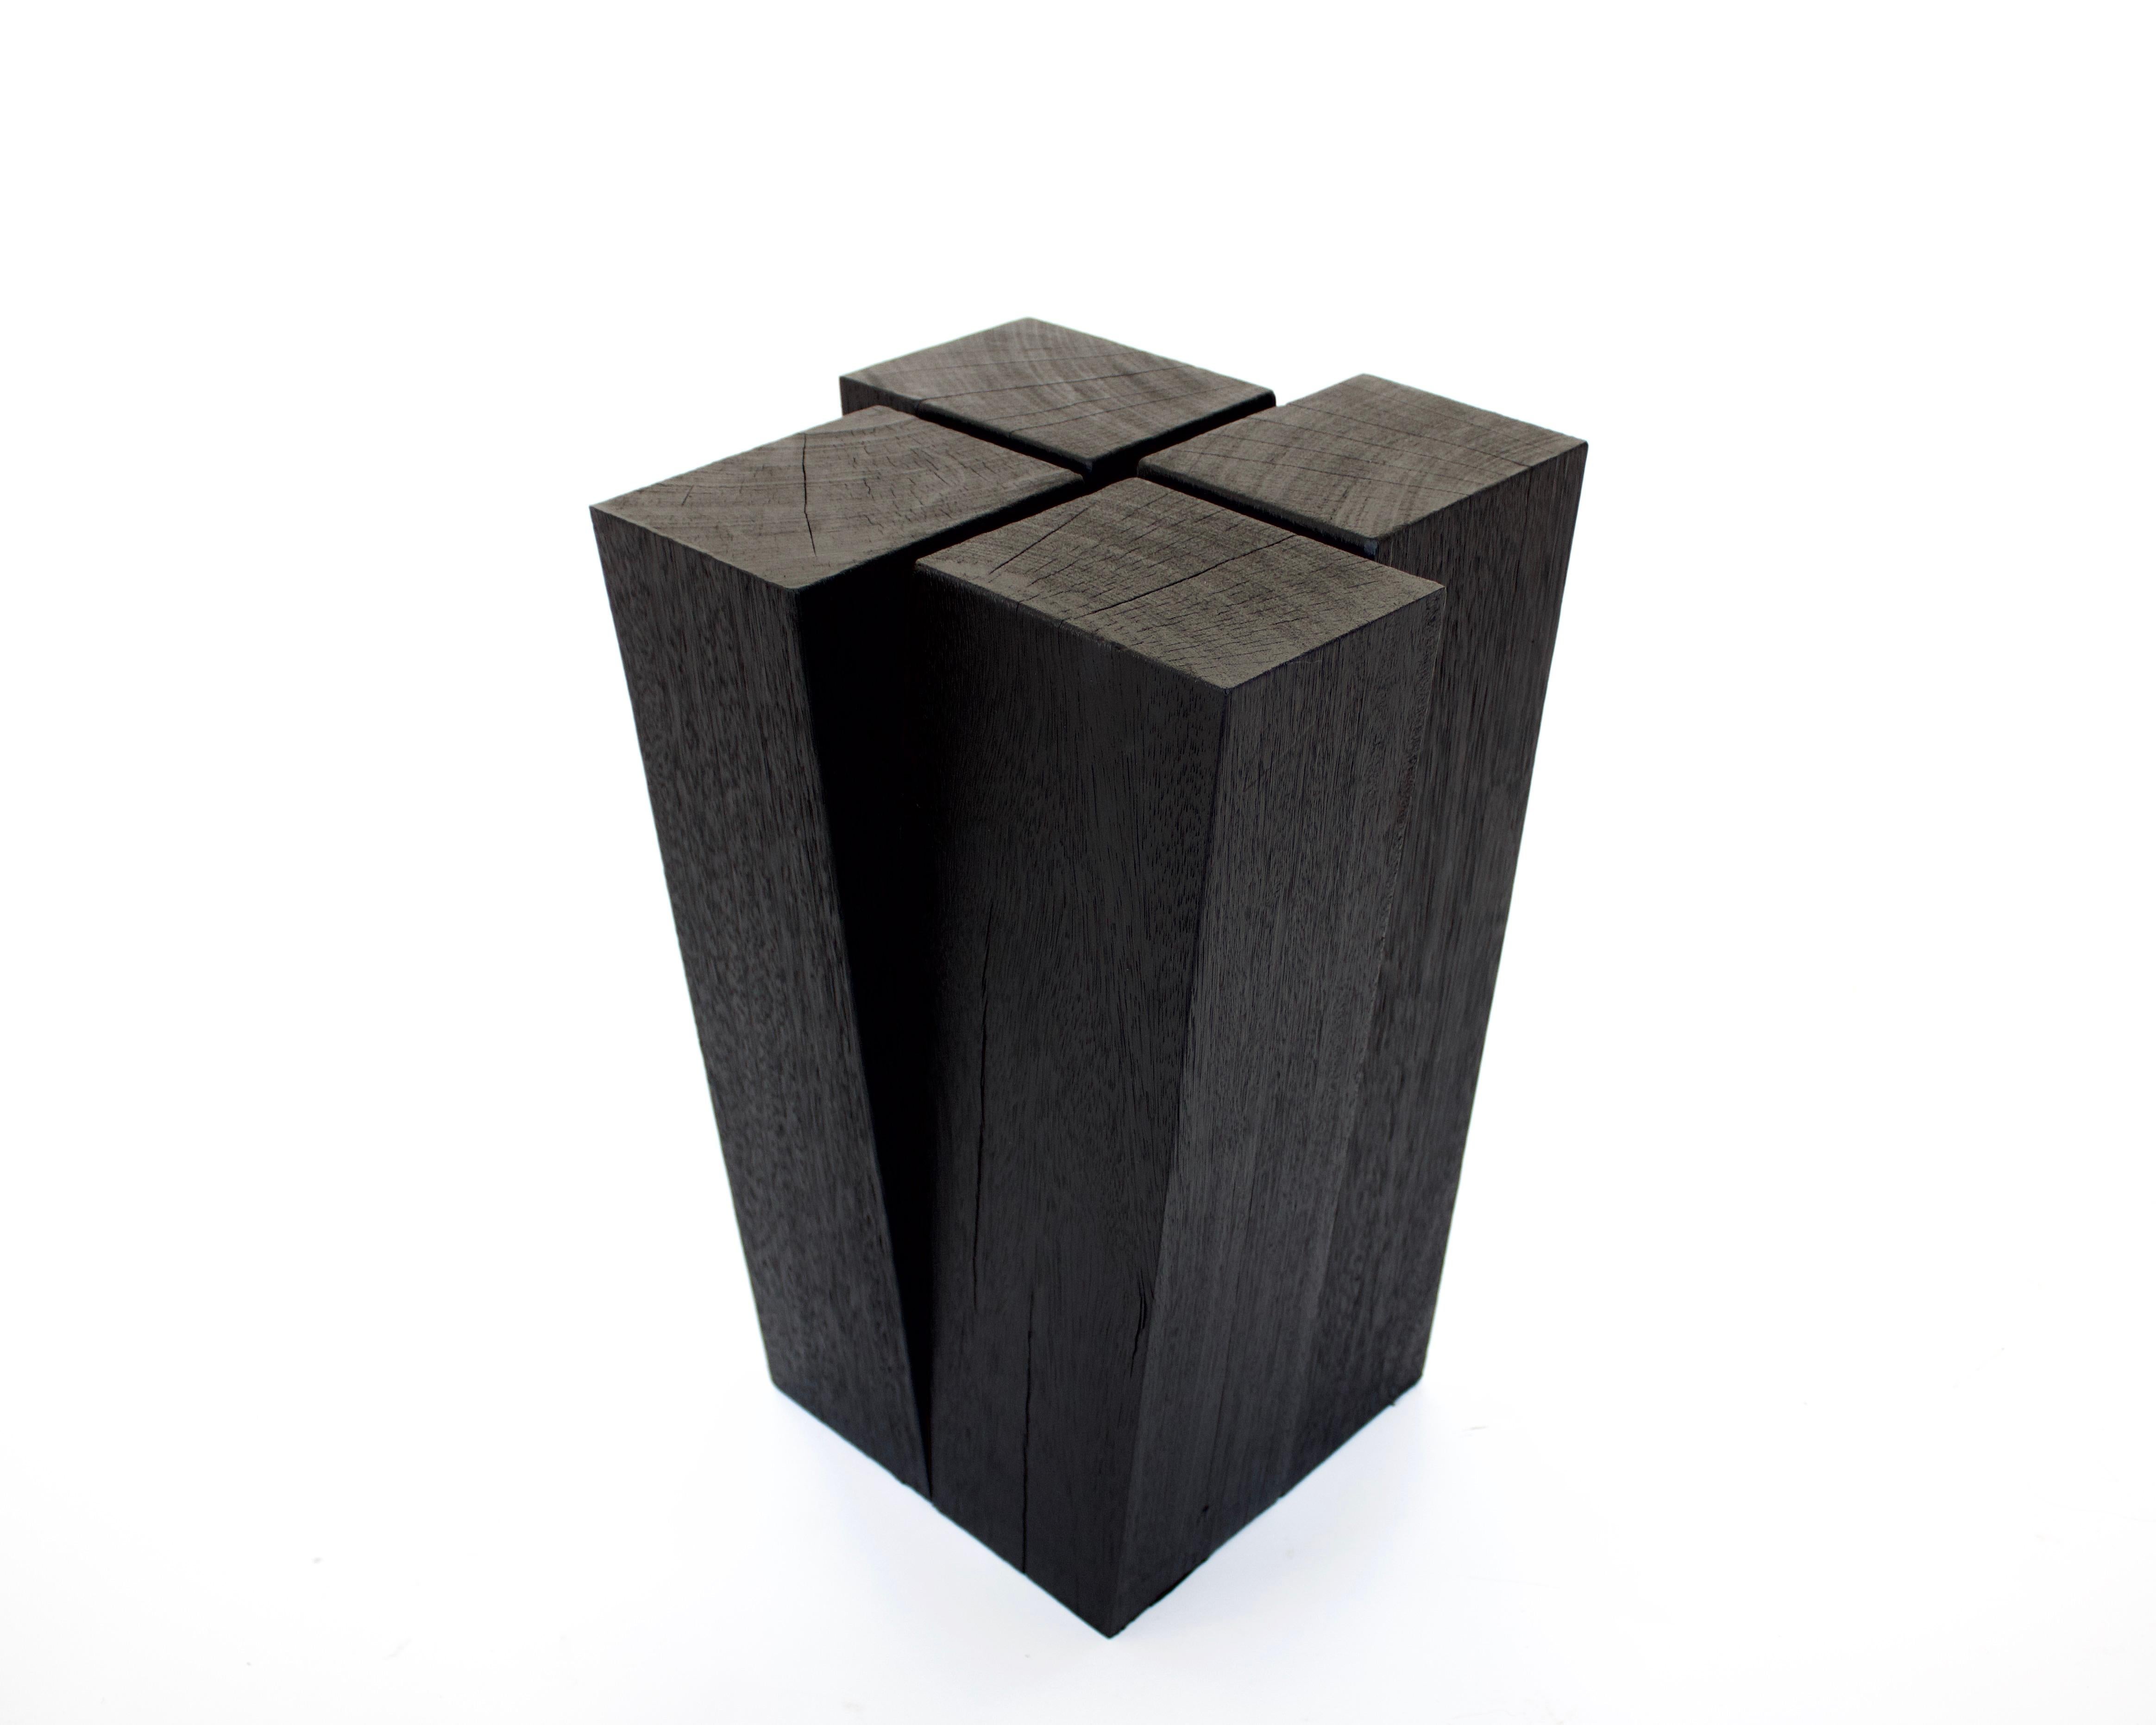 Le tabouret à quatre pieds Arno Declercq en bois de chêne belge peut être utilisé comme table d'appoint ou comme tabouret.
Arno Declercq est un designer et marchand d'art belge né en 1994 qui fabrique des objets sur mesure pour les intérieurs avec